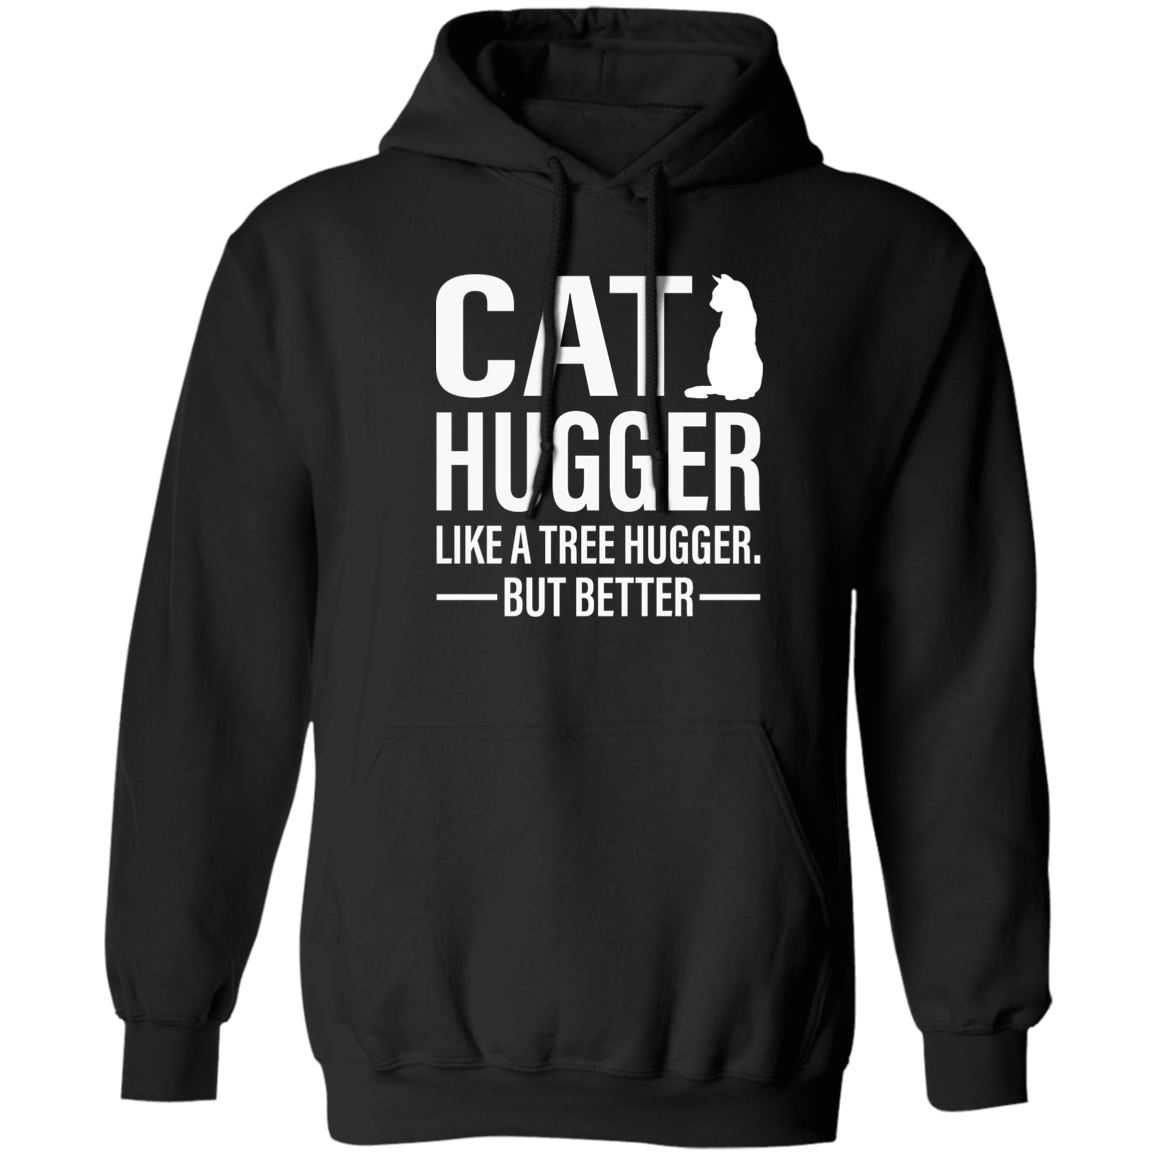 Cat Hugger - Hoodie.